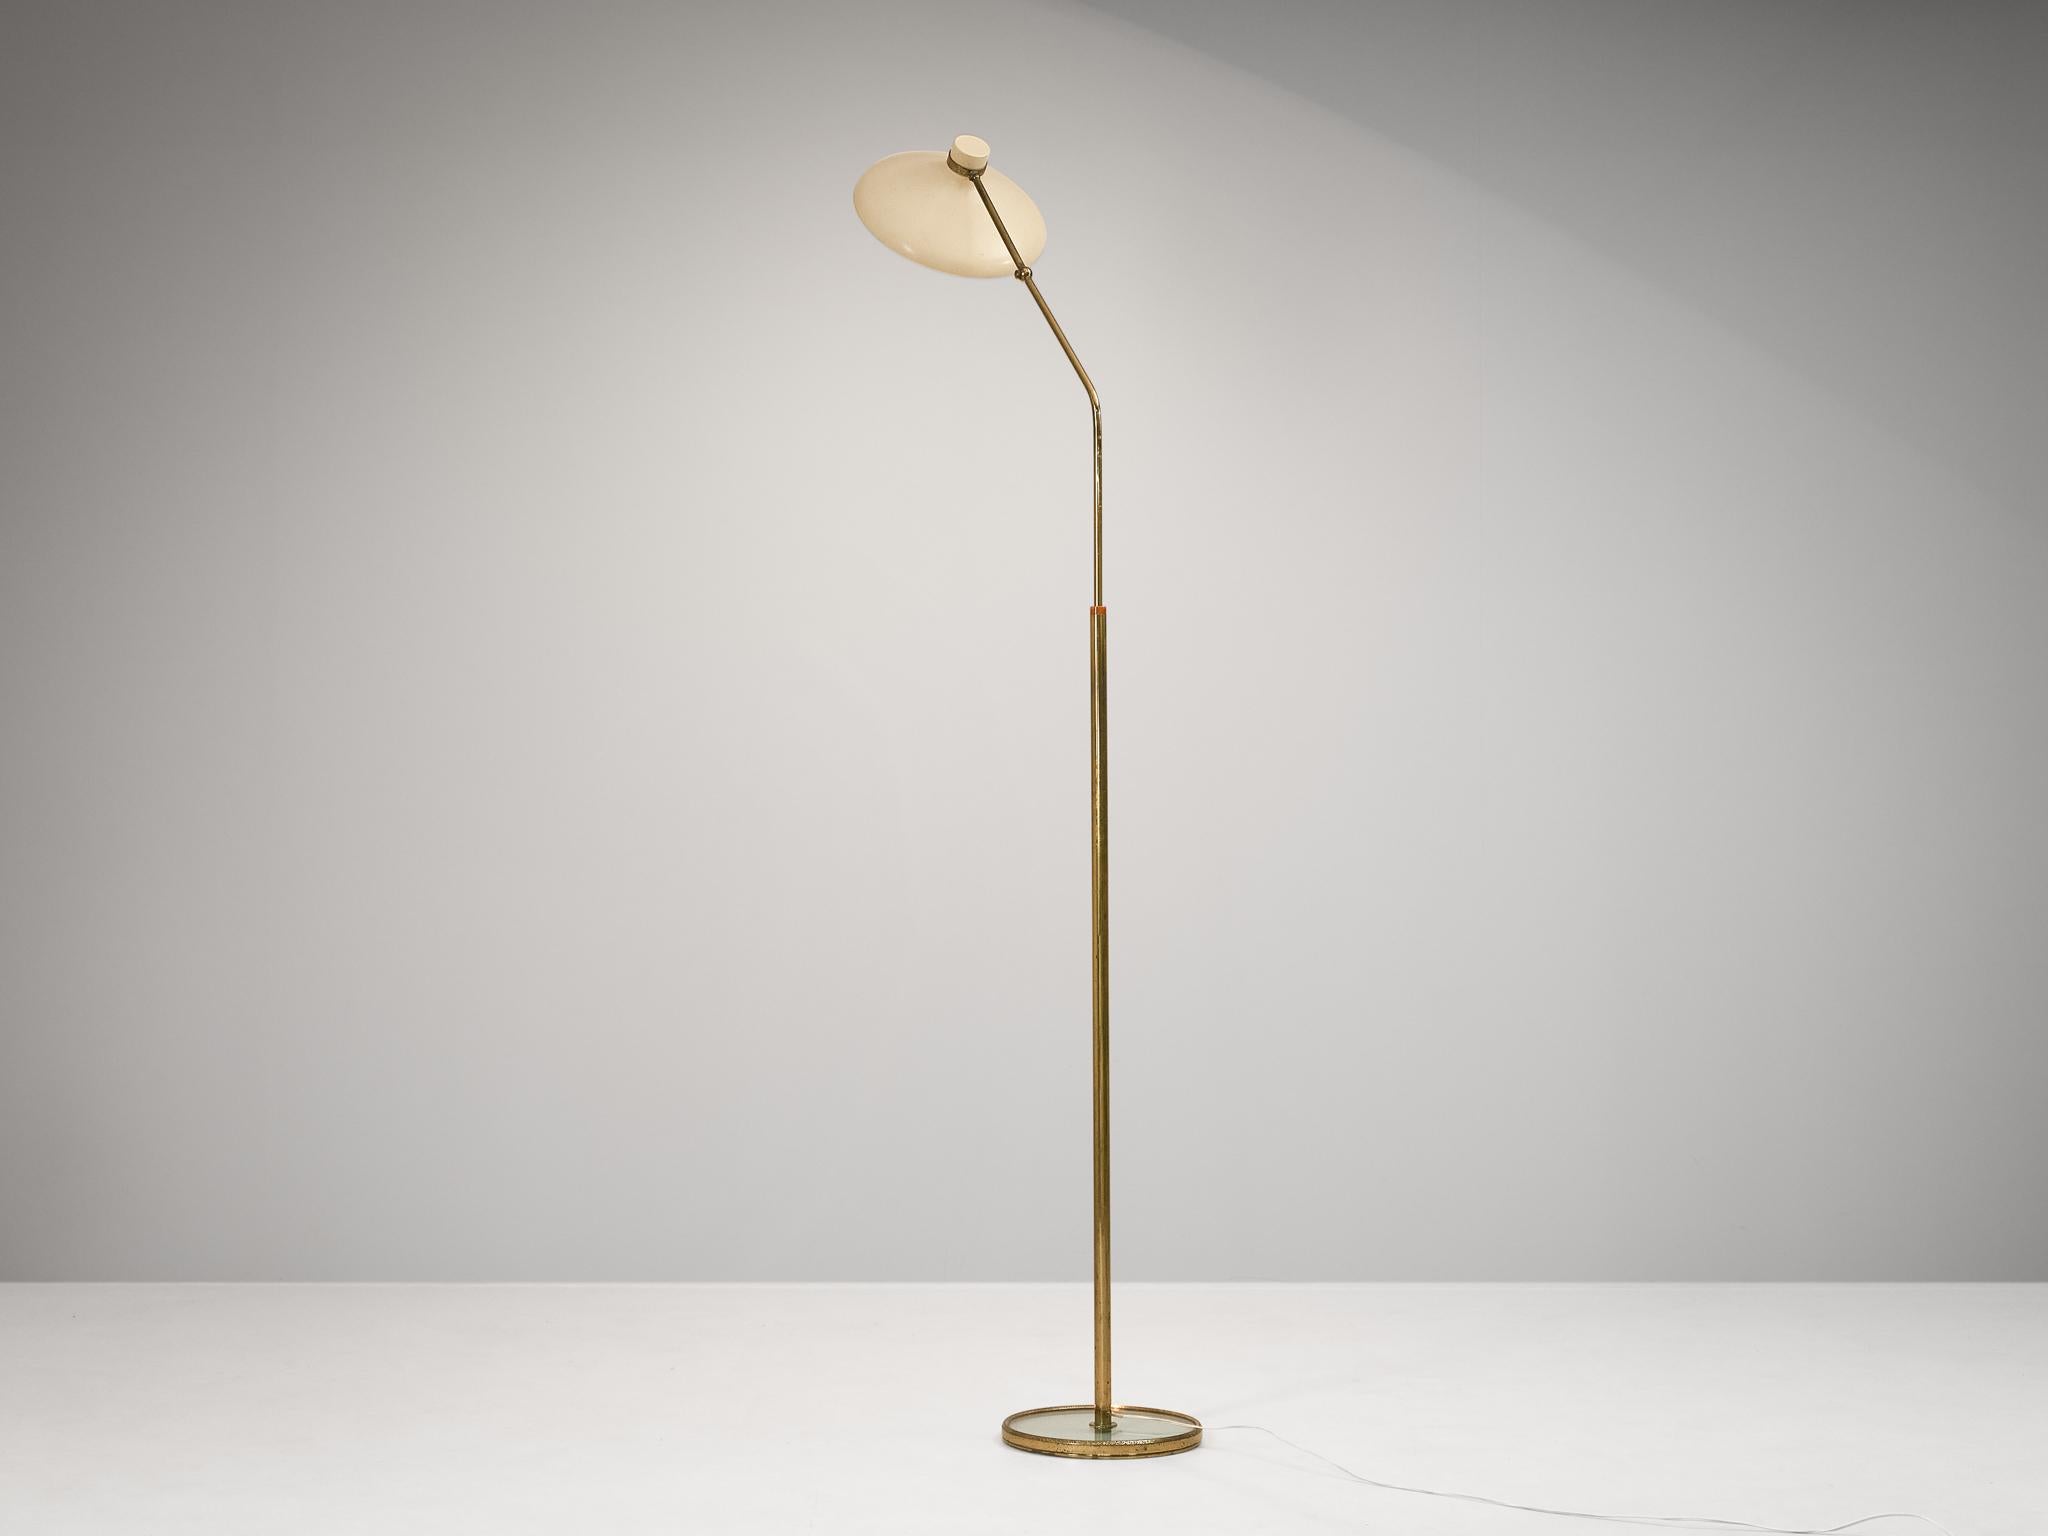 Gio Ponti for Fontana Arte ‘Parco Dei Principi’ Floor Lamp with White Shade 1